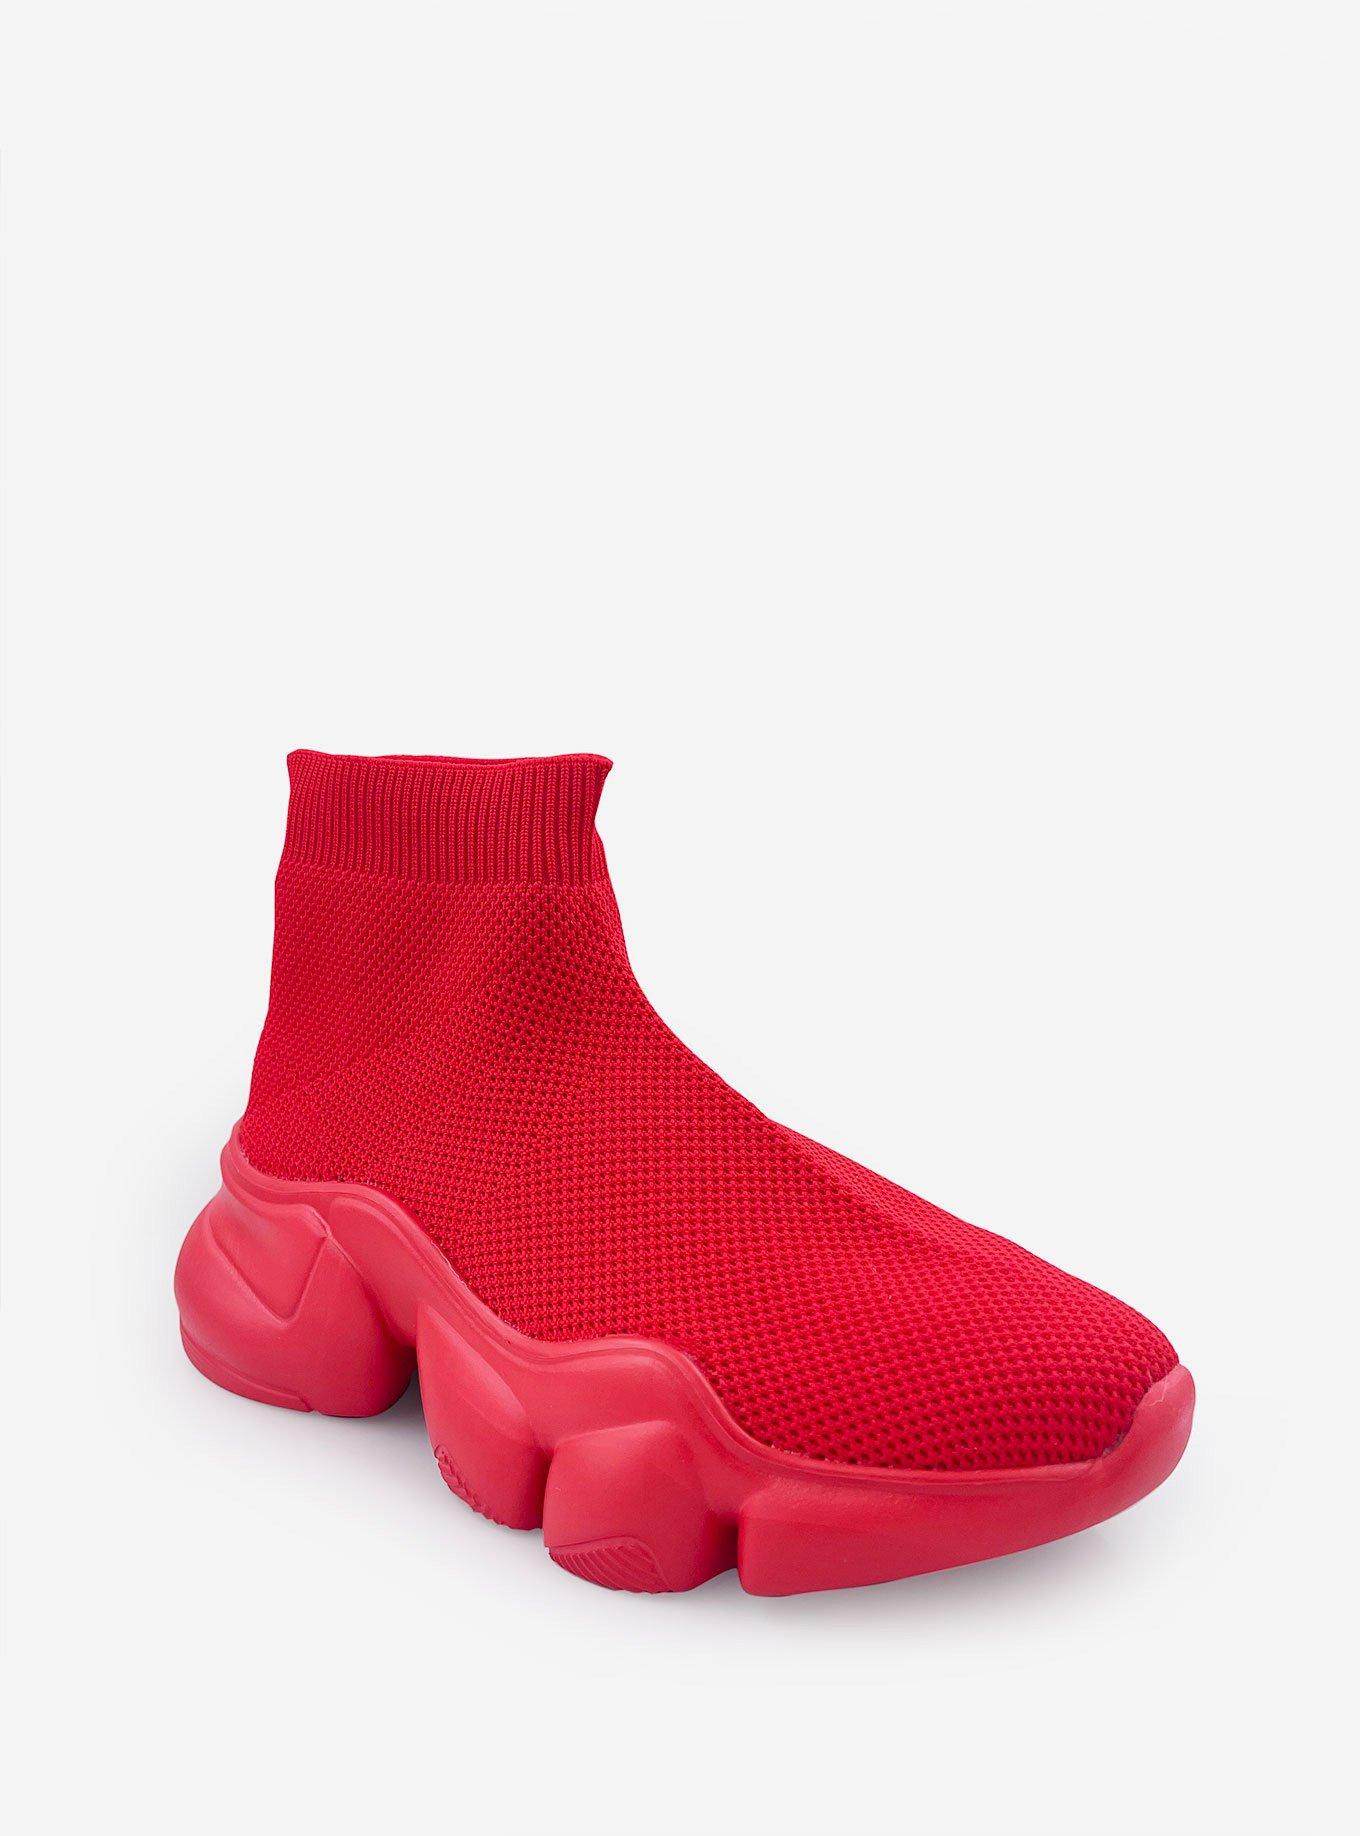 Mid Top Slip on Sock Sneaker Red, RED, hi-res